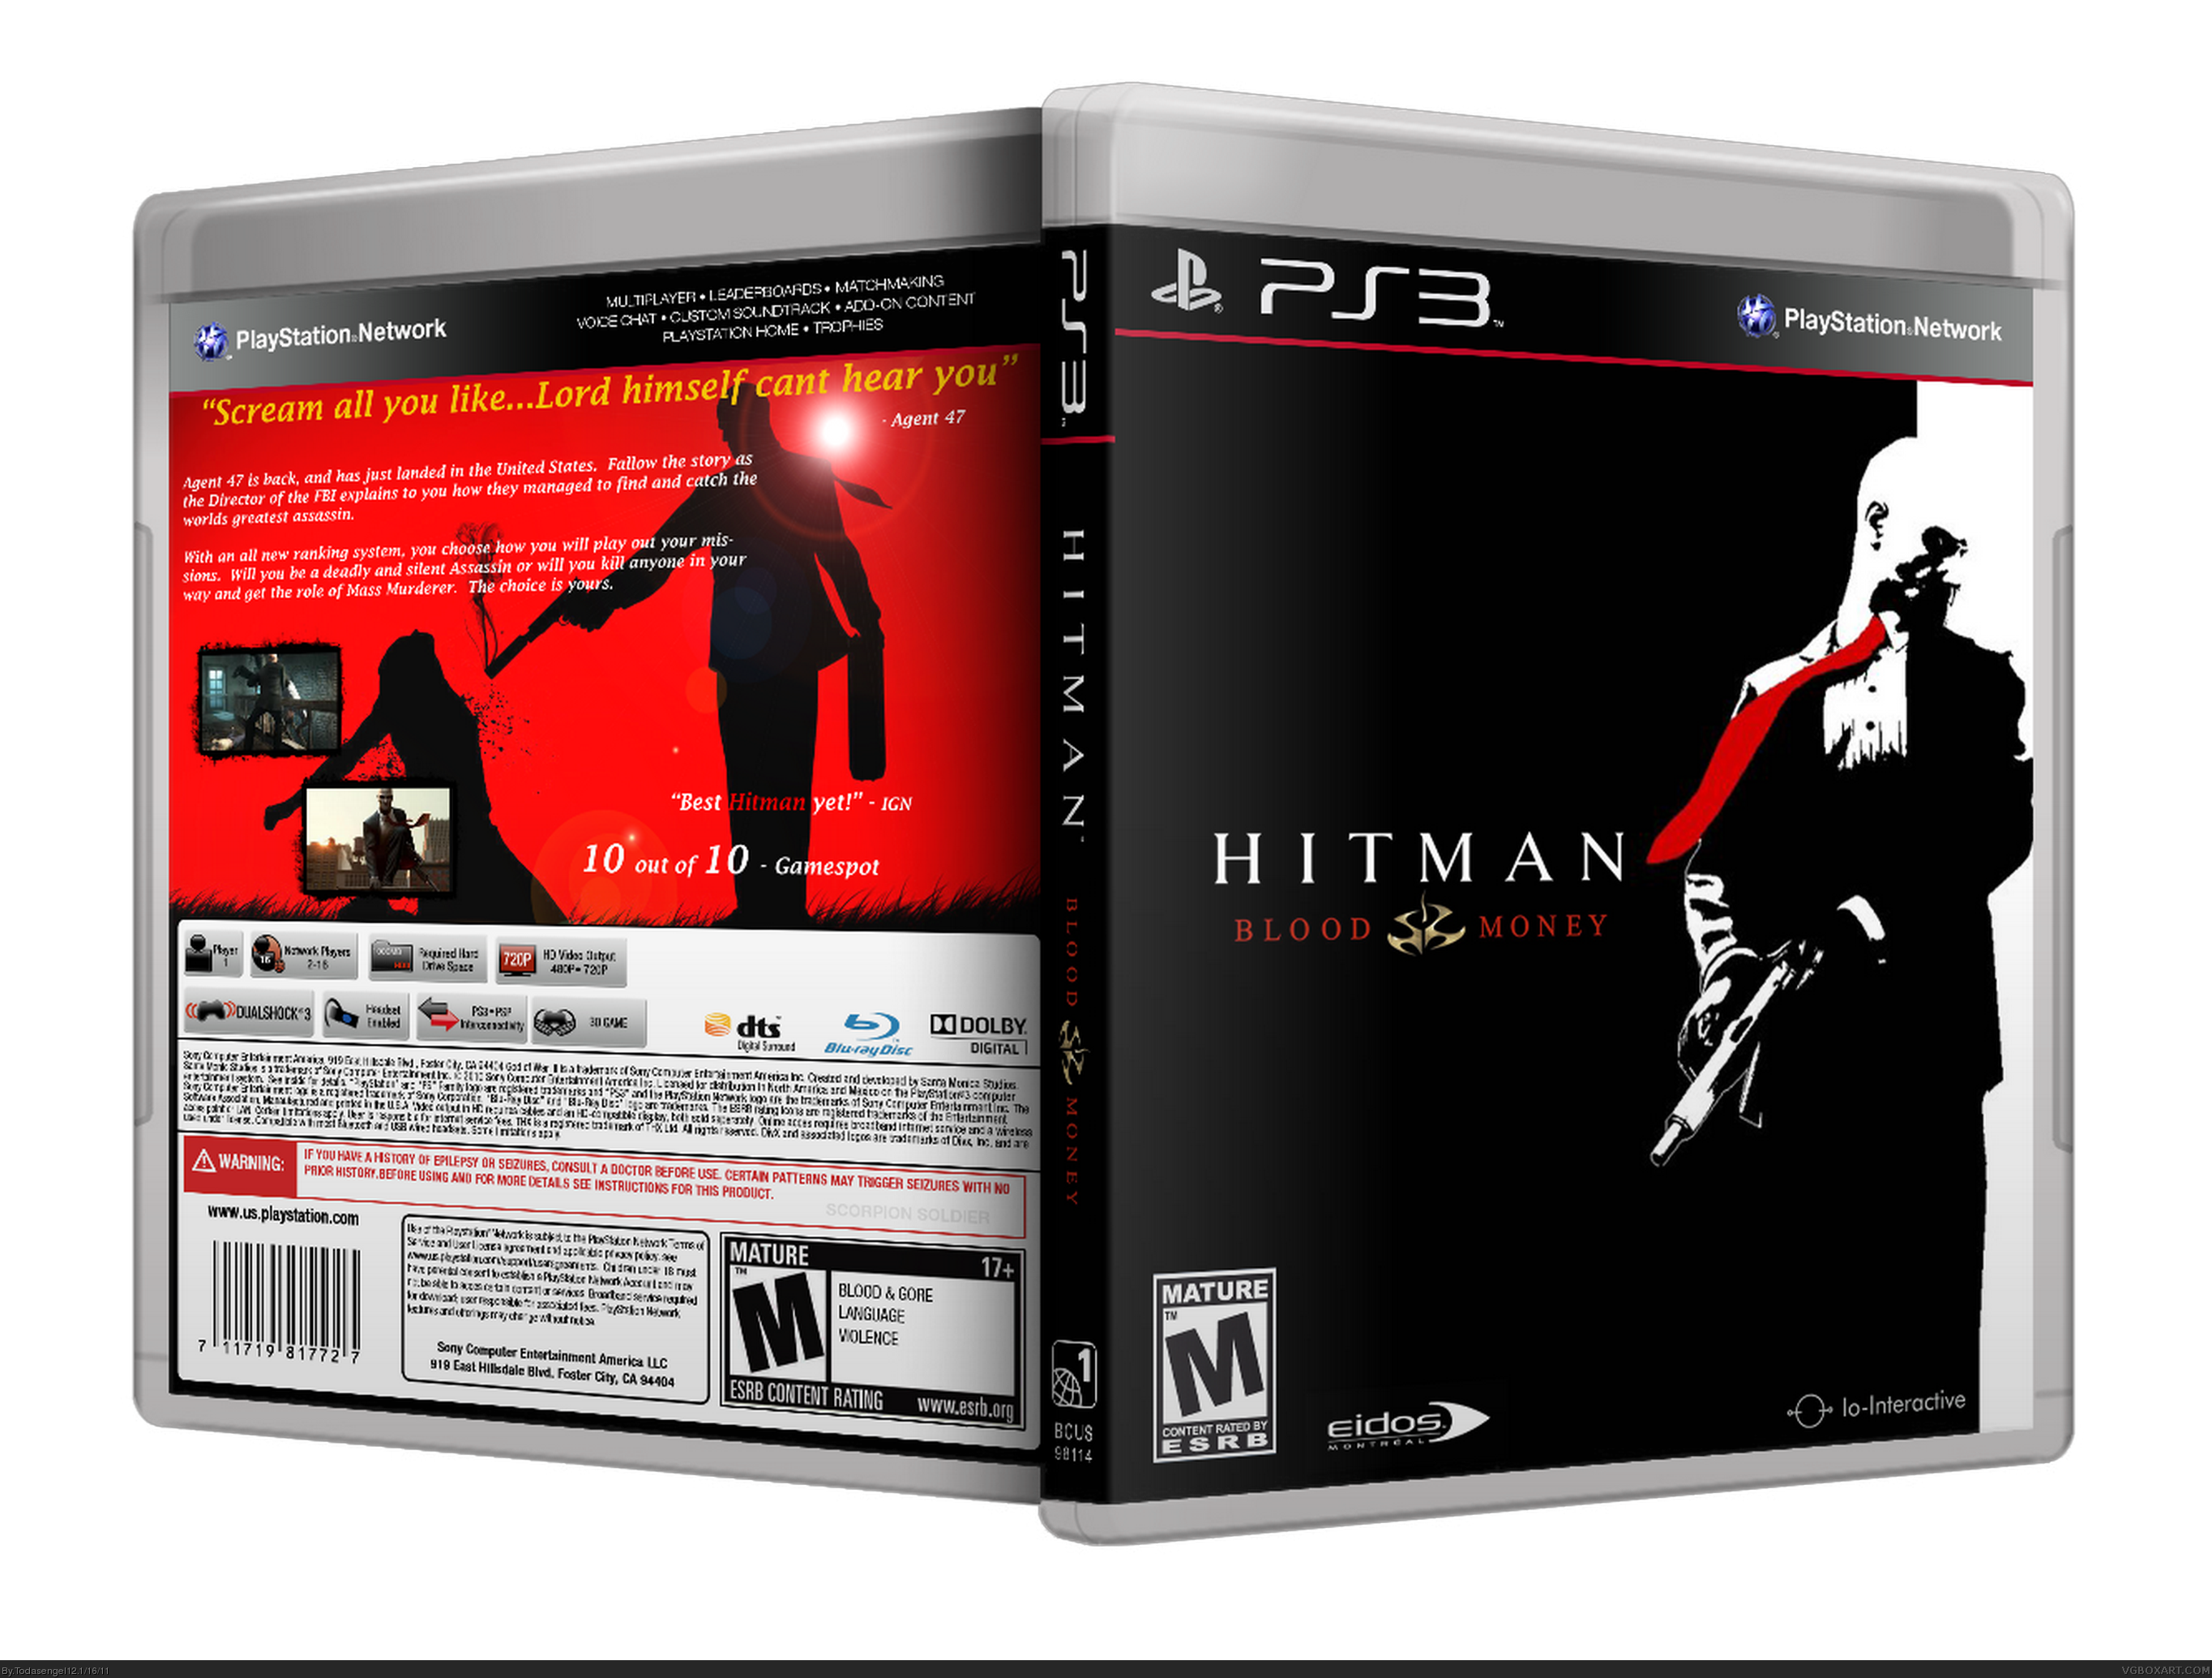 Ziek persoon hoek Met bloed bevlekt Hitman: Blood Money PlayStation 3 Box Art Cover by Todasengel12